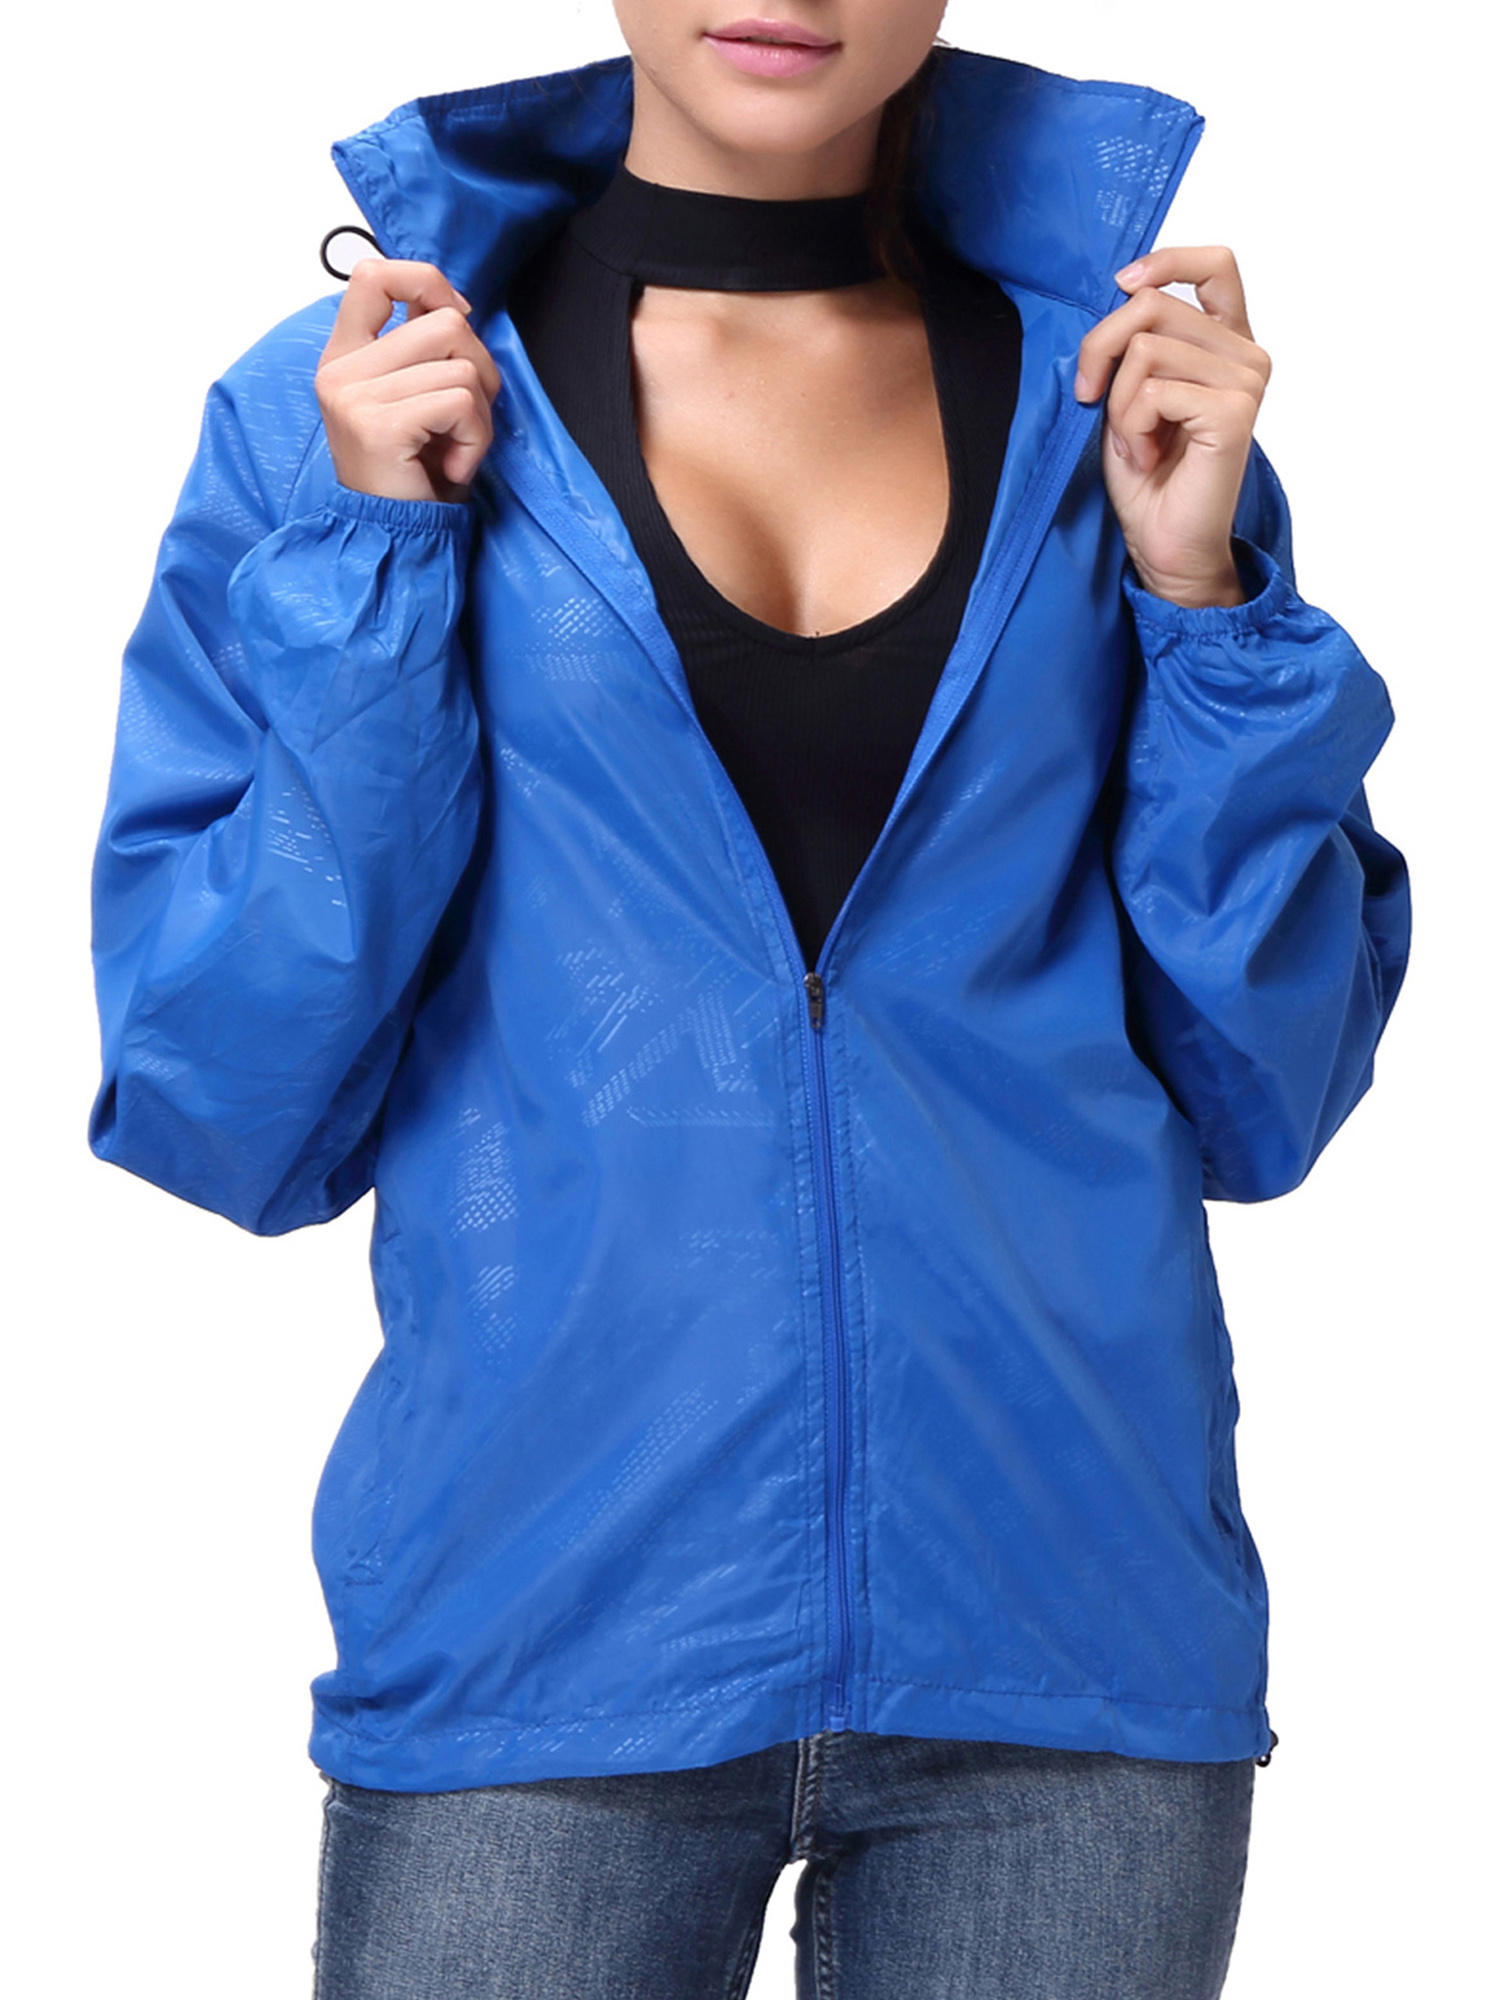 LELINTA Womens Fashion Lightweight Jacket Waterproof Windbreaker Packable Jacket Classic Zipper-Up Hoodie Active Sportswear - image 1 of 9